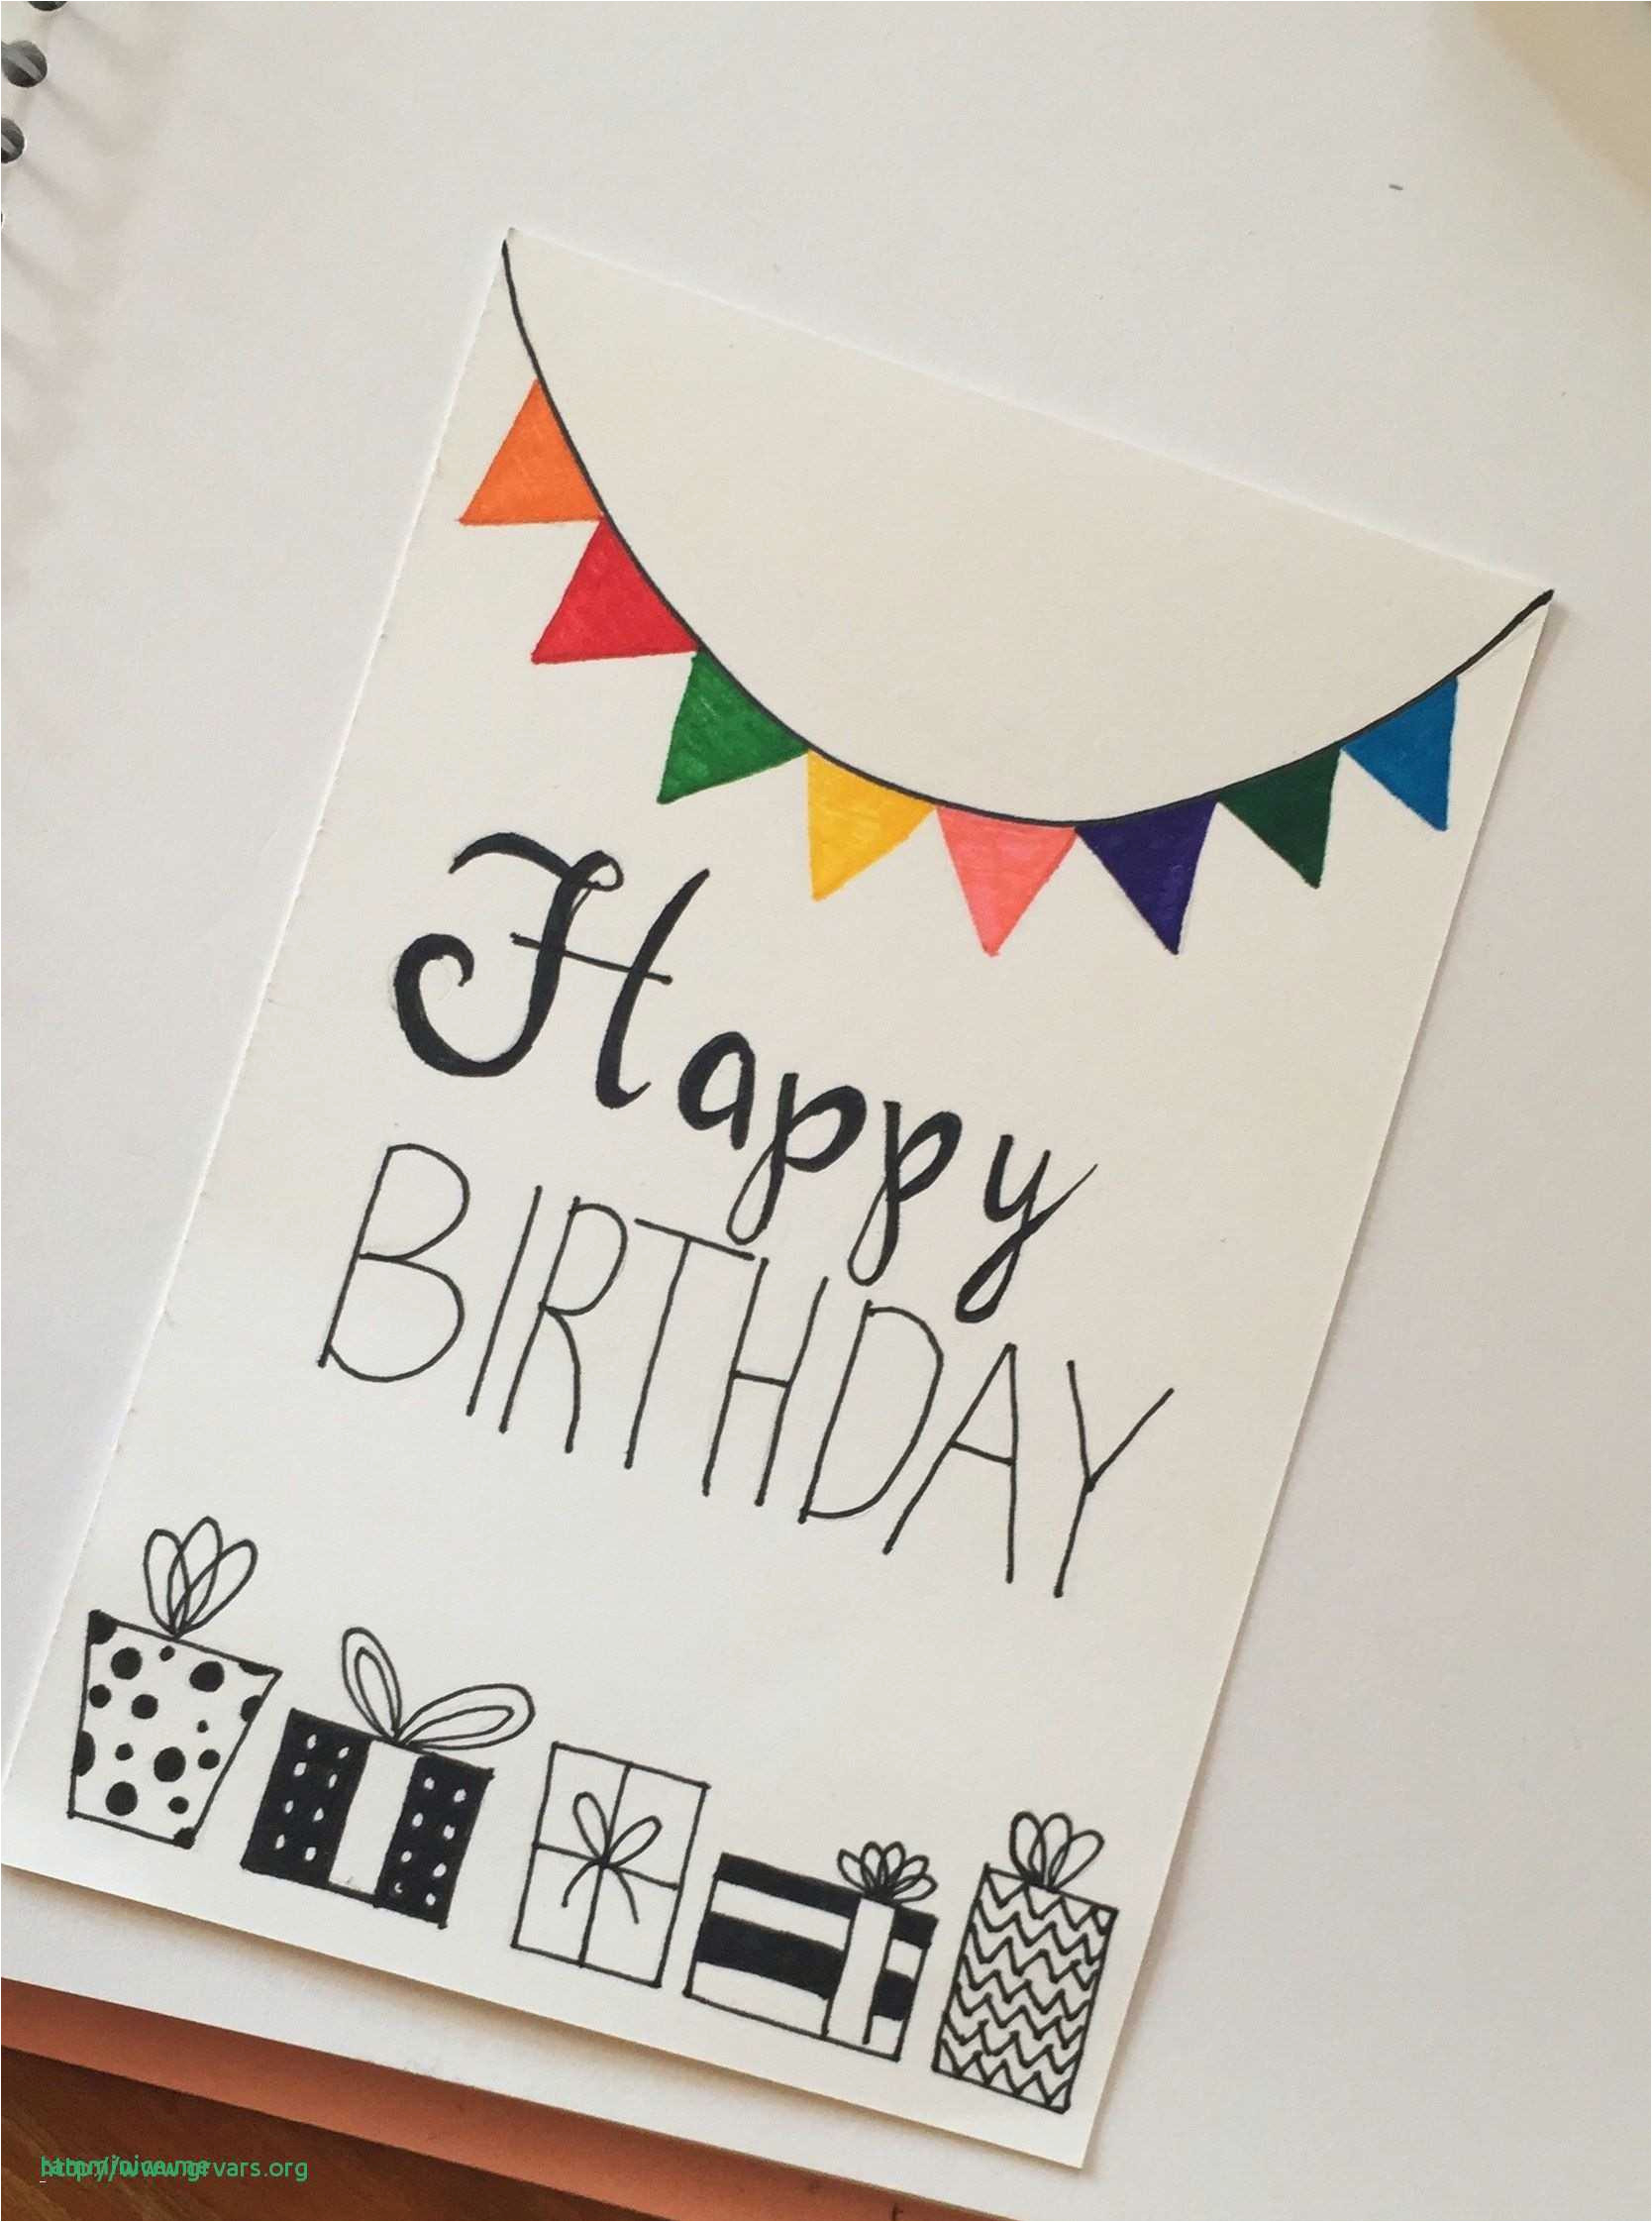 Ideas Handmade Birthday Cards Diy Birthday Cards Simple Simple Handmade Birthday Cards Awesome